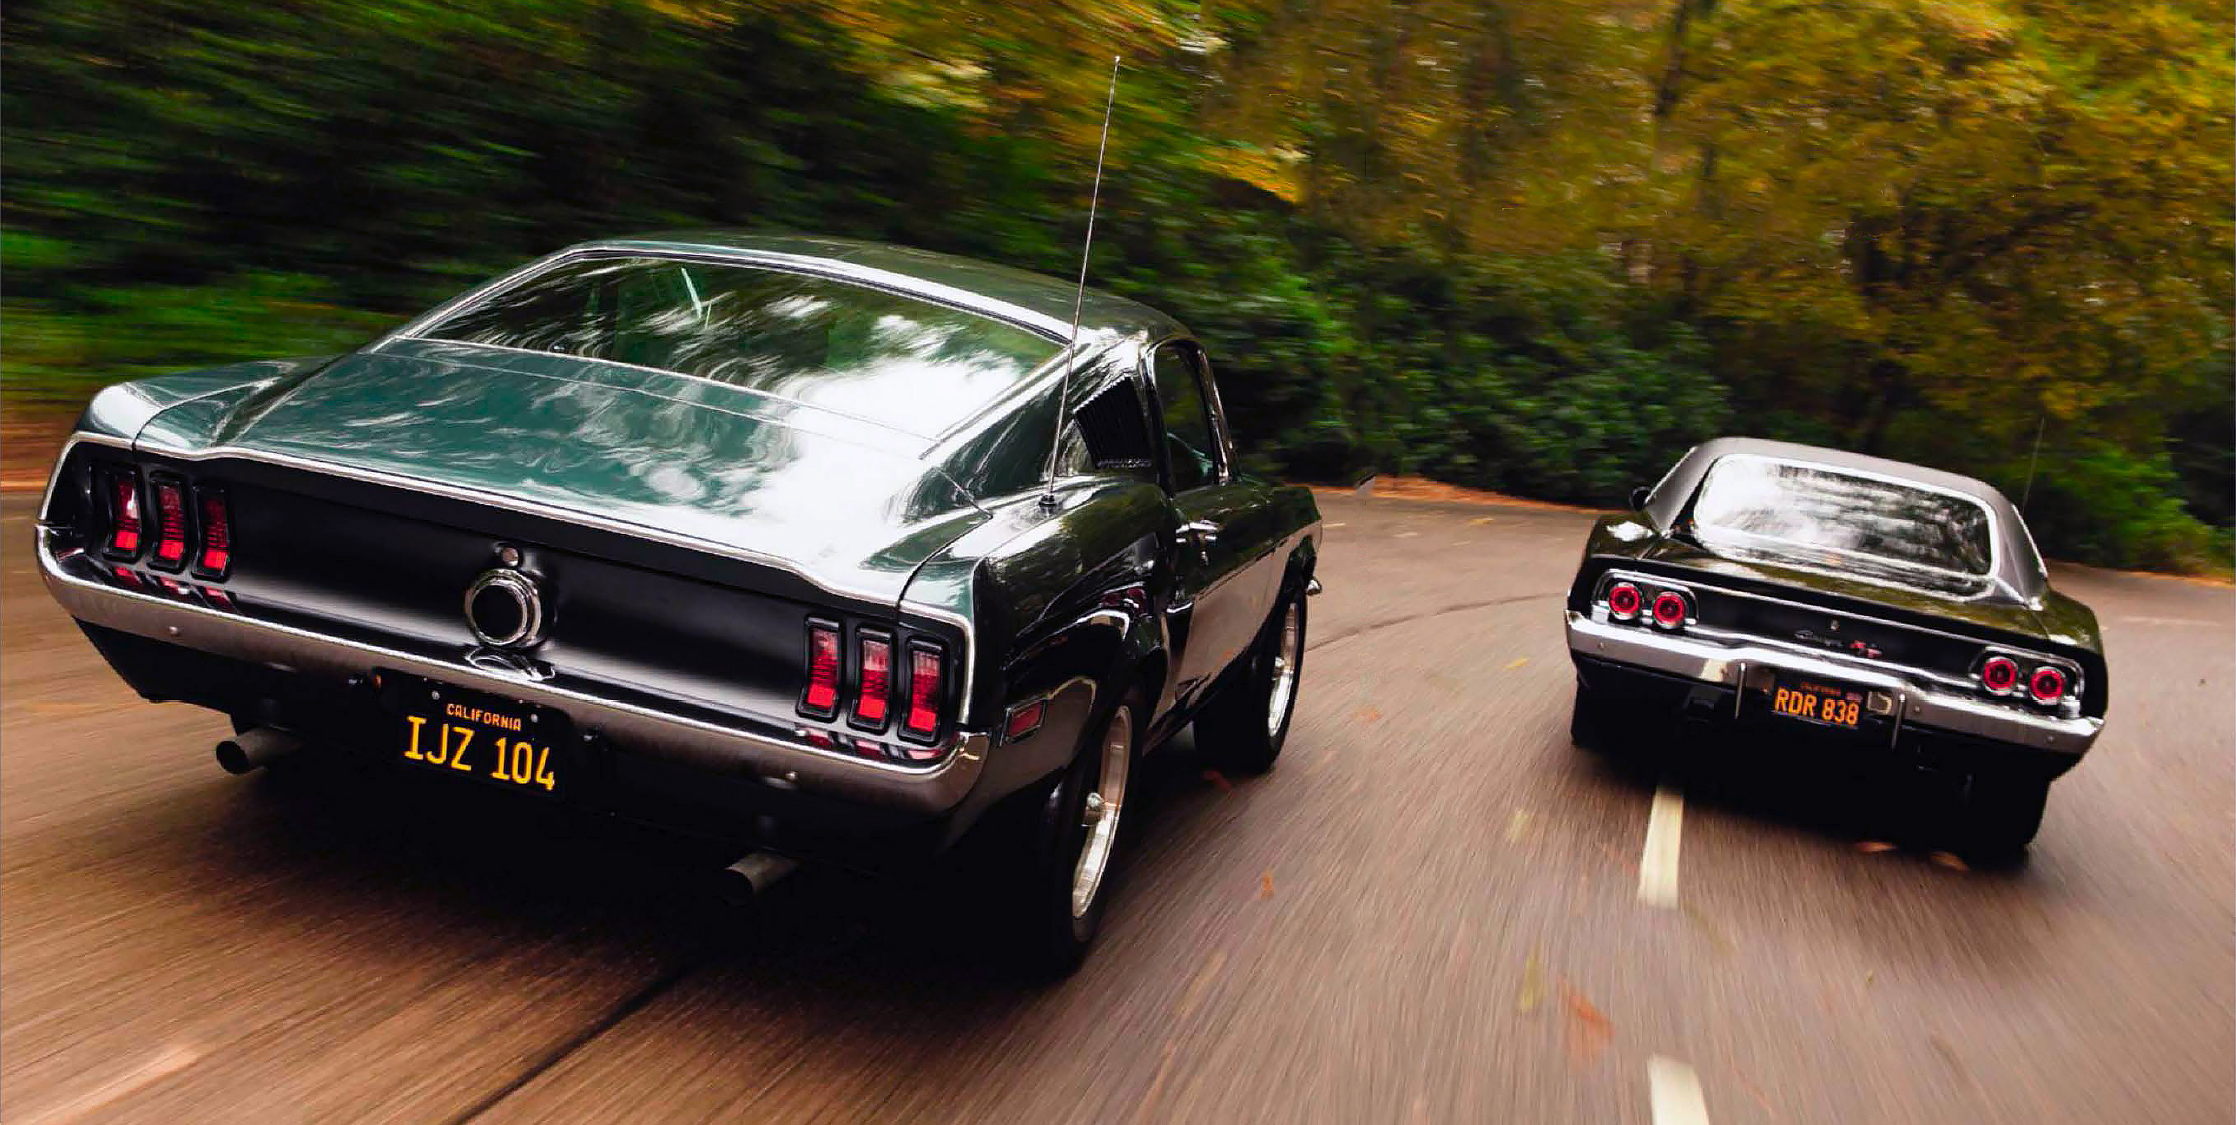 Bullitt and Steve McQueen’s Ford Mustang 390 GT vs Dodge Charger 440R/T